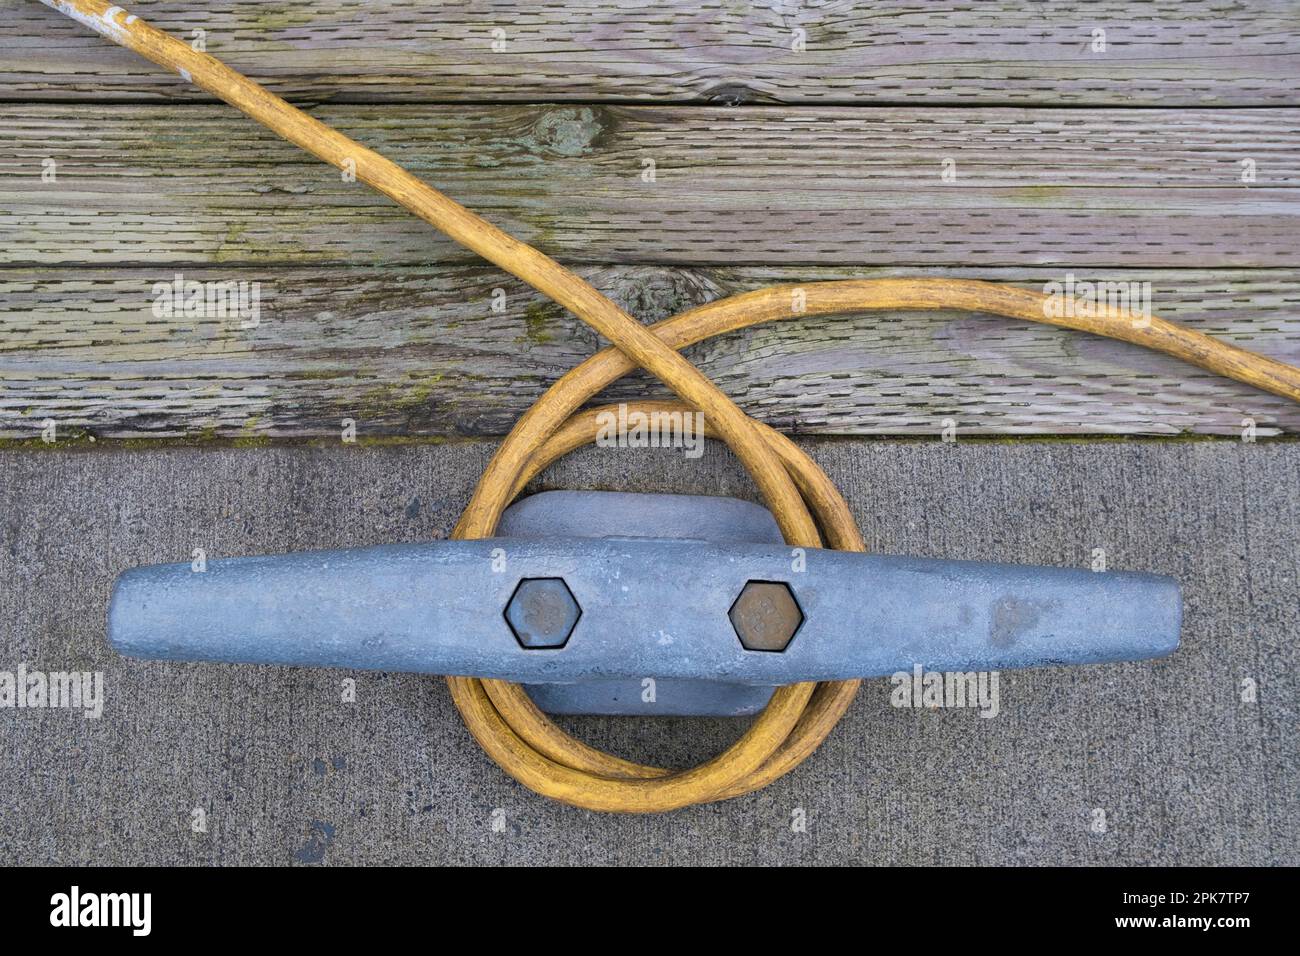 Un câble d'alimentation enroulé autour d'une cale nautique métallique sur le quai, côté quai Banque D'Images